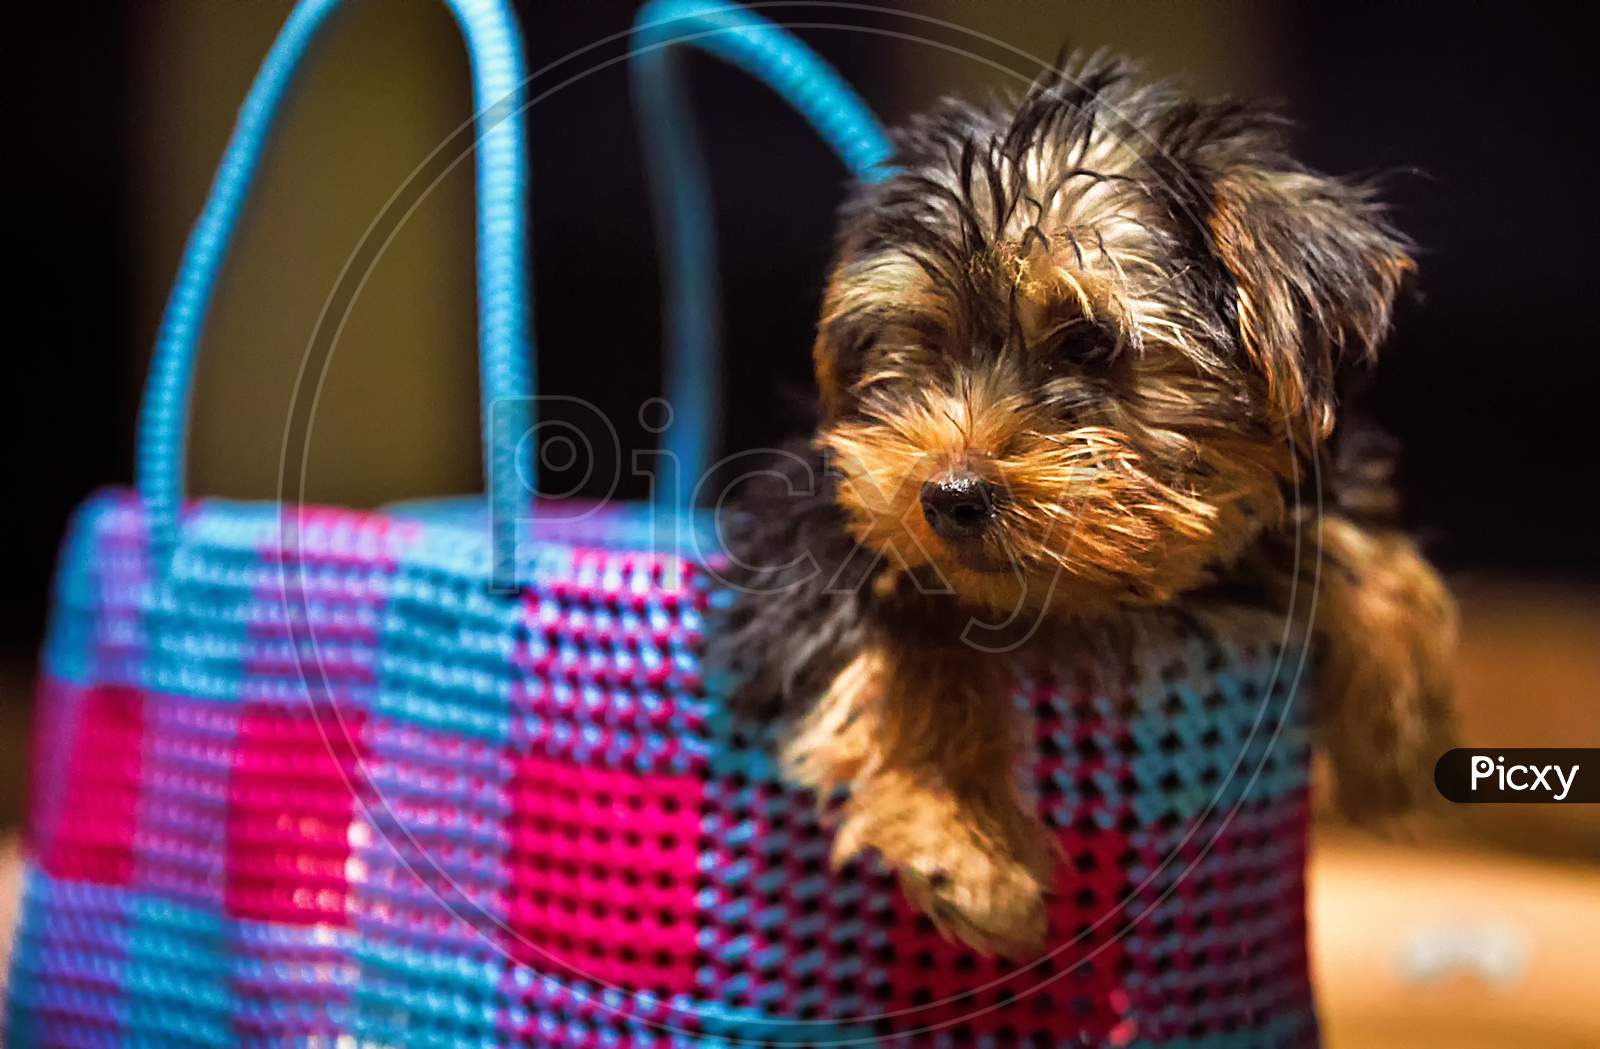 Little morkie puppy dog sitting in basket